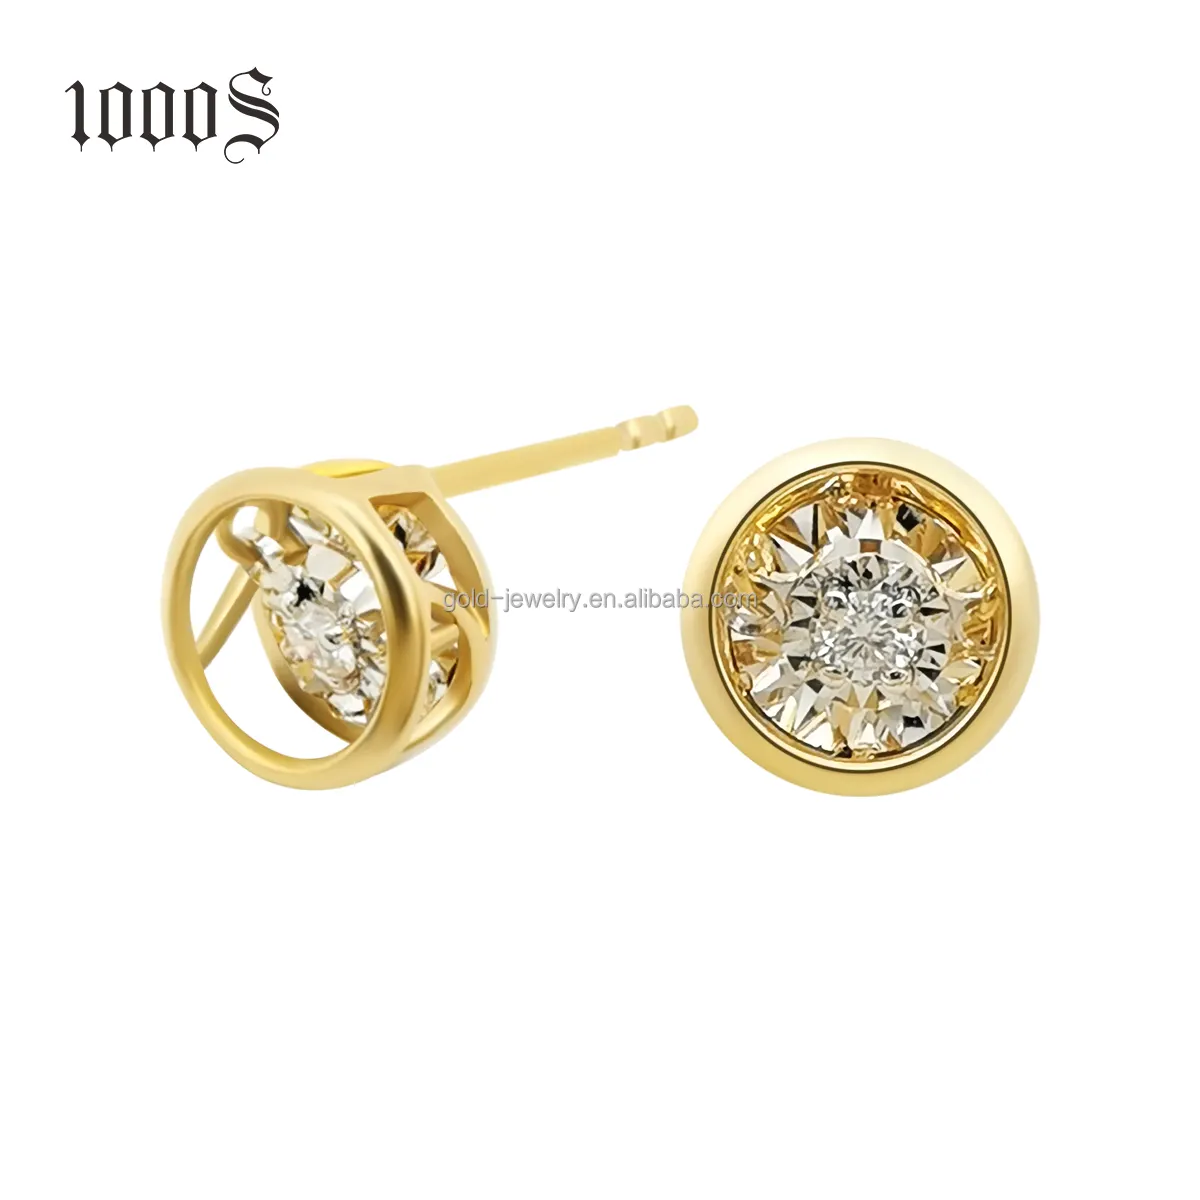 Reine 18 Karat Echt Gold Ohrring Ohr stecker Diamant Ohrring Einfache Hochzeit Gold Ohrringe Geschenk Frauen Feiner Schmuck